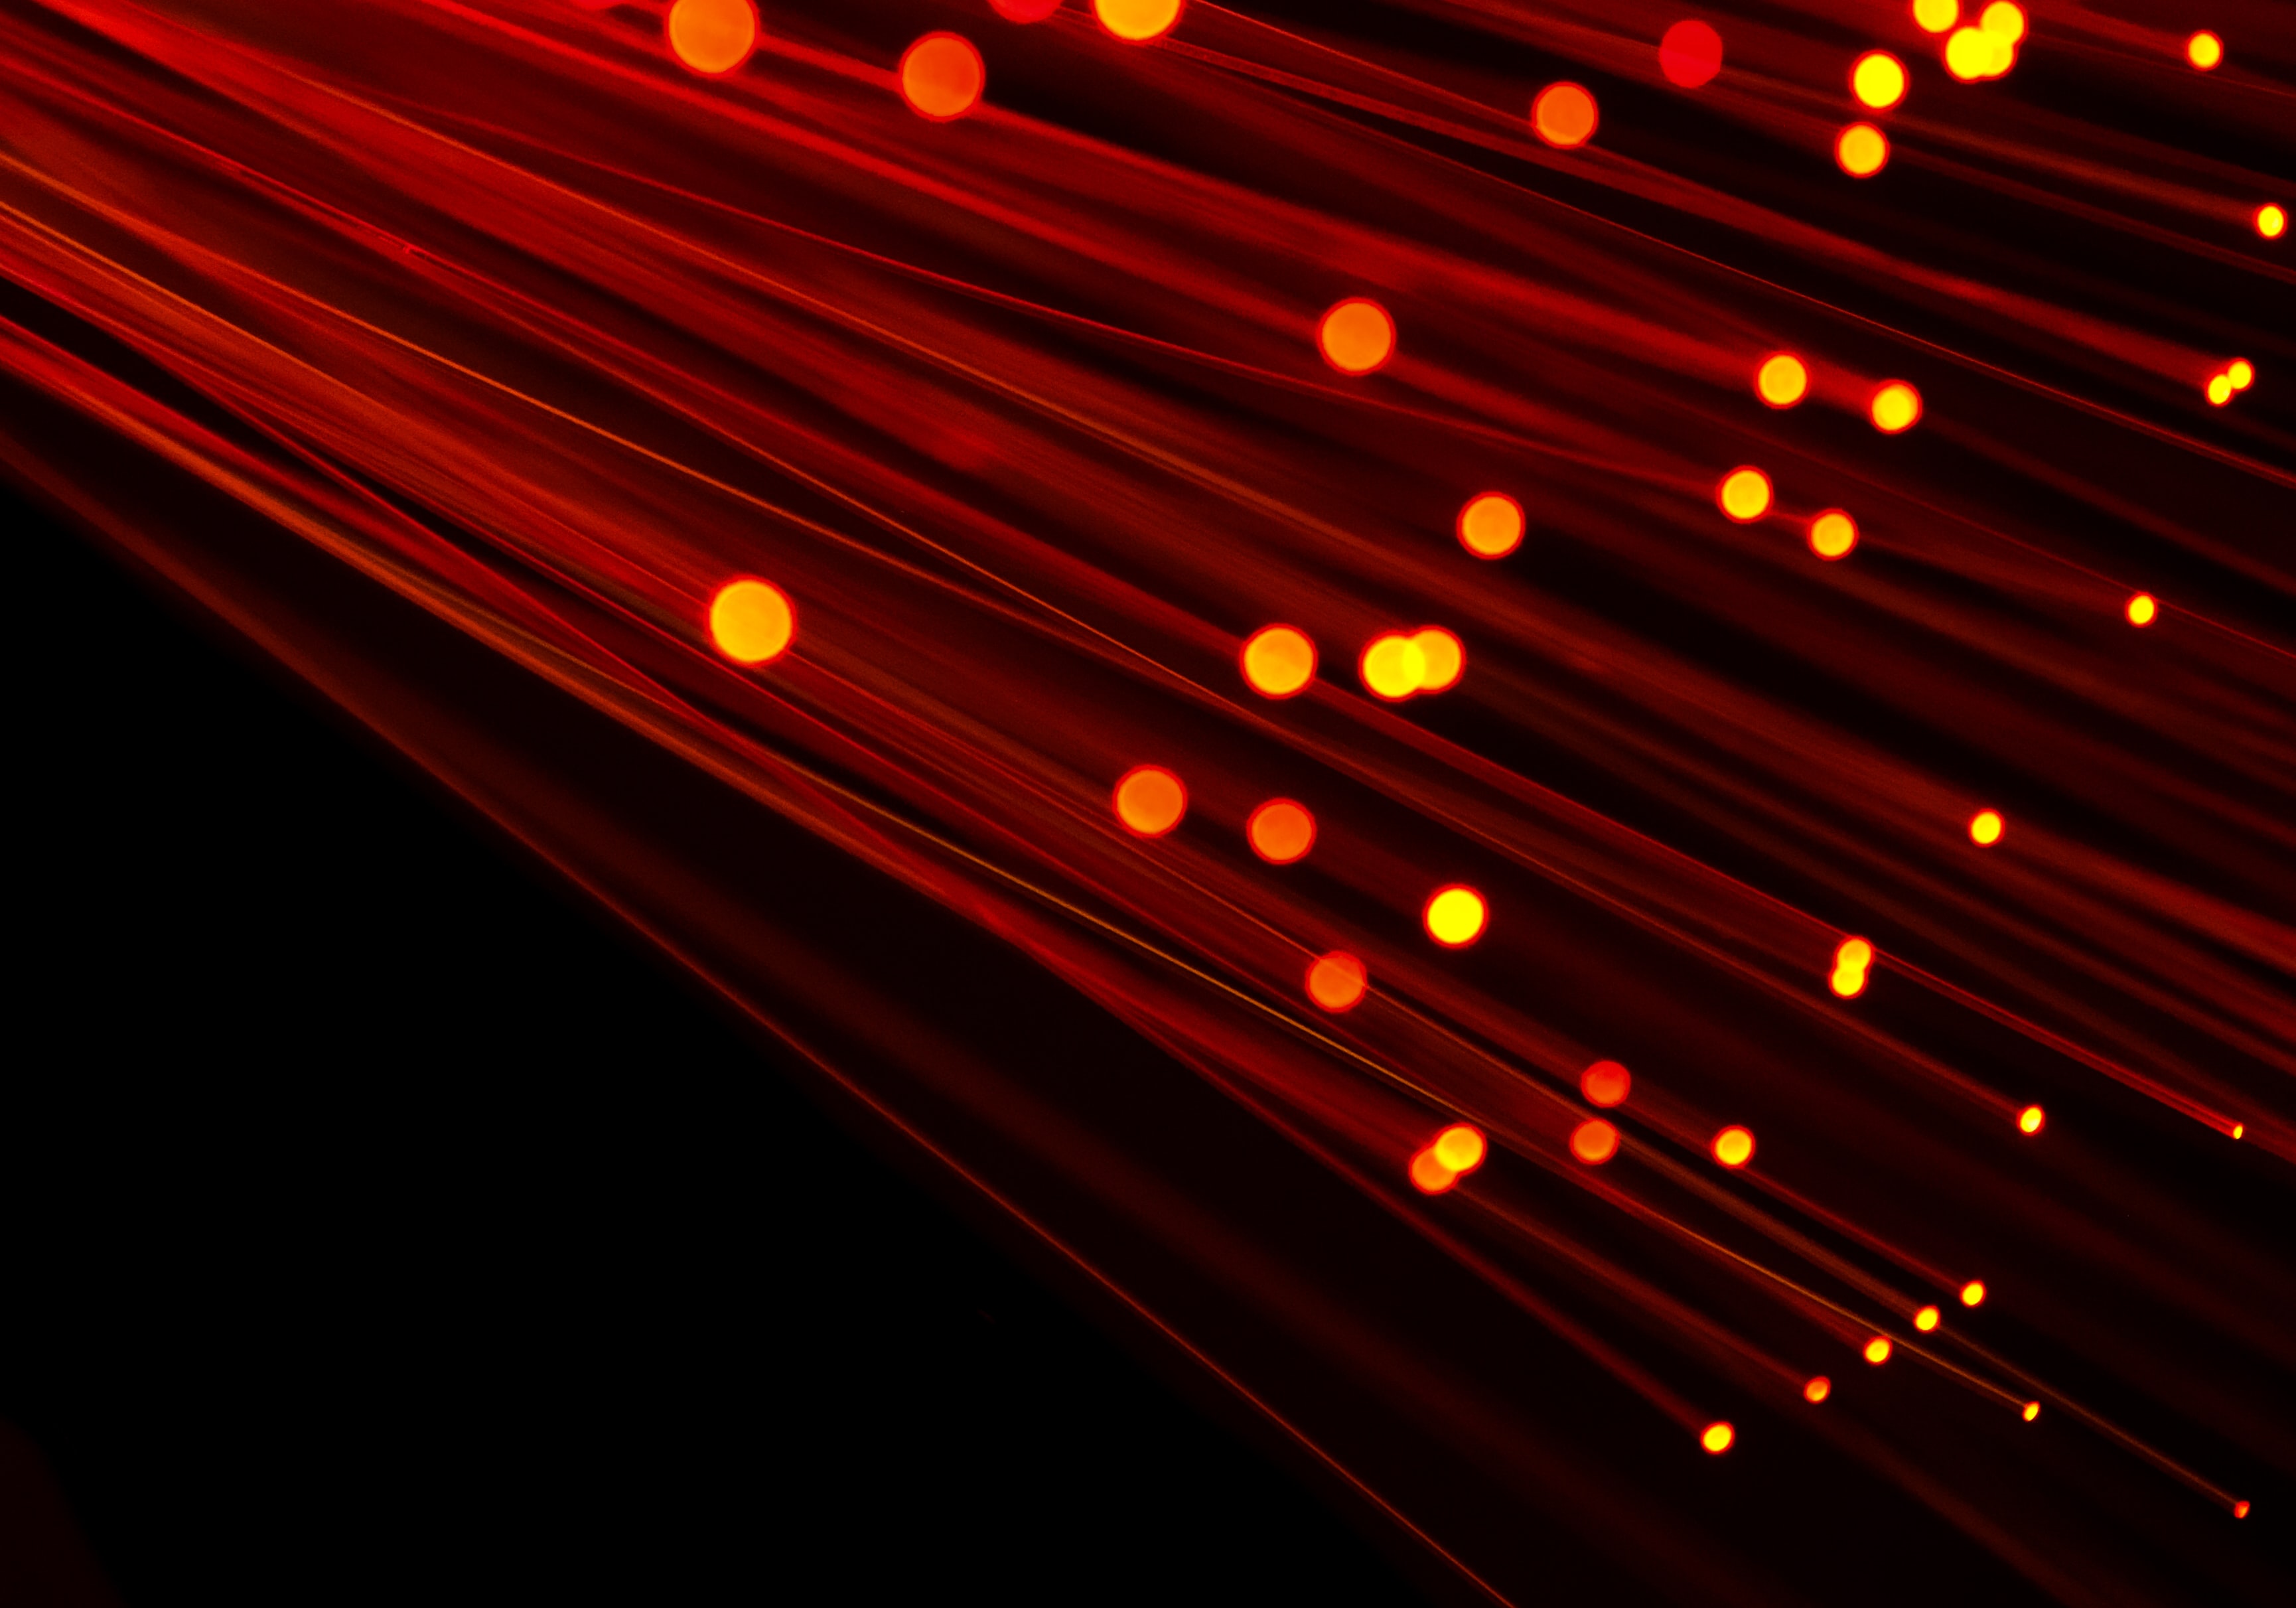 Glasfaserlichtbild mit rotem Farbton auf schwarzem Hintergrund. Ideales Bild zur Darstellung von Breitband, Technologie, Geschwindigkeit und Kabelinfrastruktur.